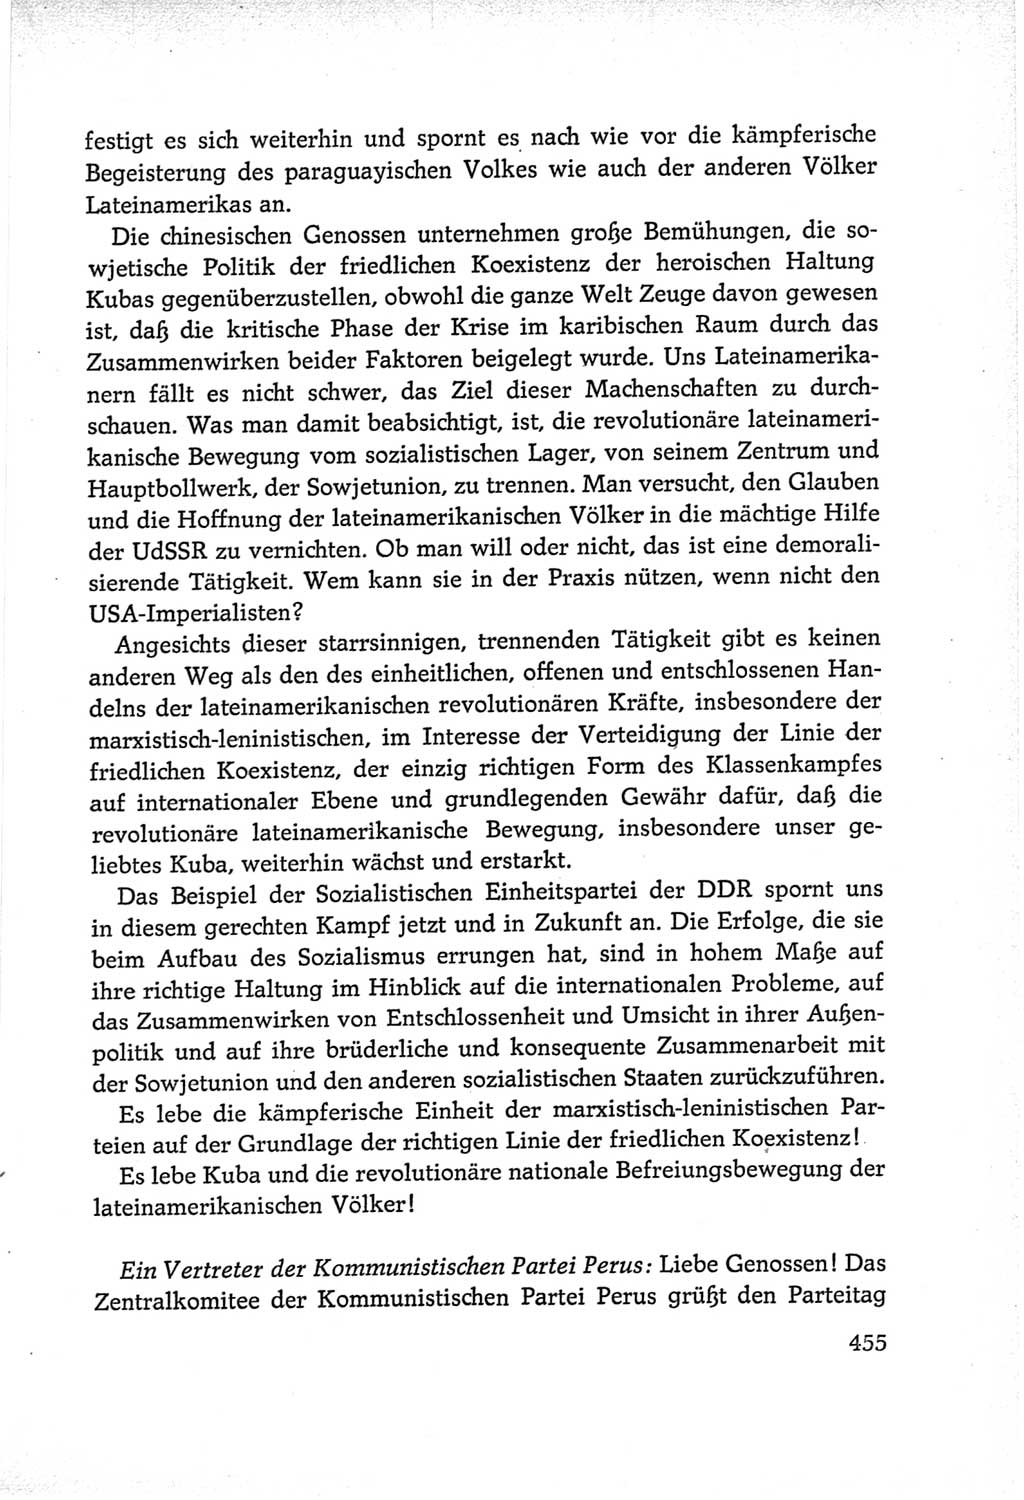 Protokoll der Verhandlungen des Ⅵ. Parteitages der Sozialistischen Einheitspartei Deutschlands (SED) [Deutsche Demokratische Republik (DDR)] 1963, Band Ⅱ, Seite 455 (Prot. Verh. Ⅵ. PT SED DDR 1963, Bd. Ⅱ, S. 455)